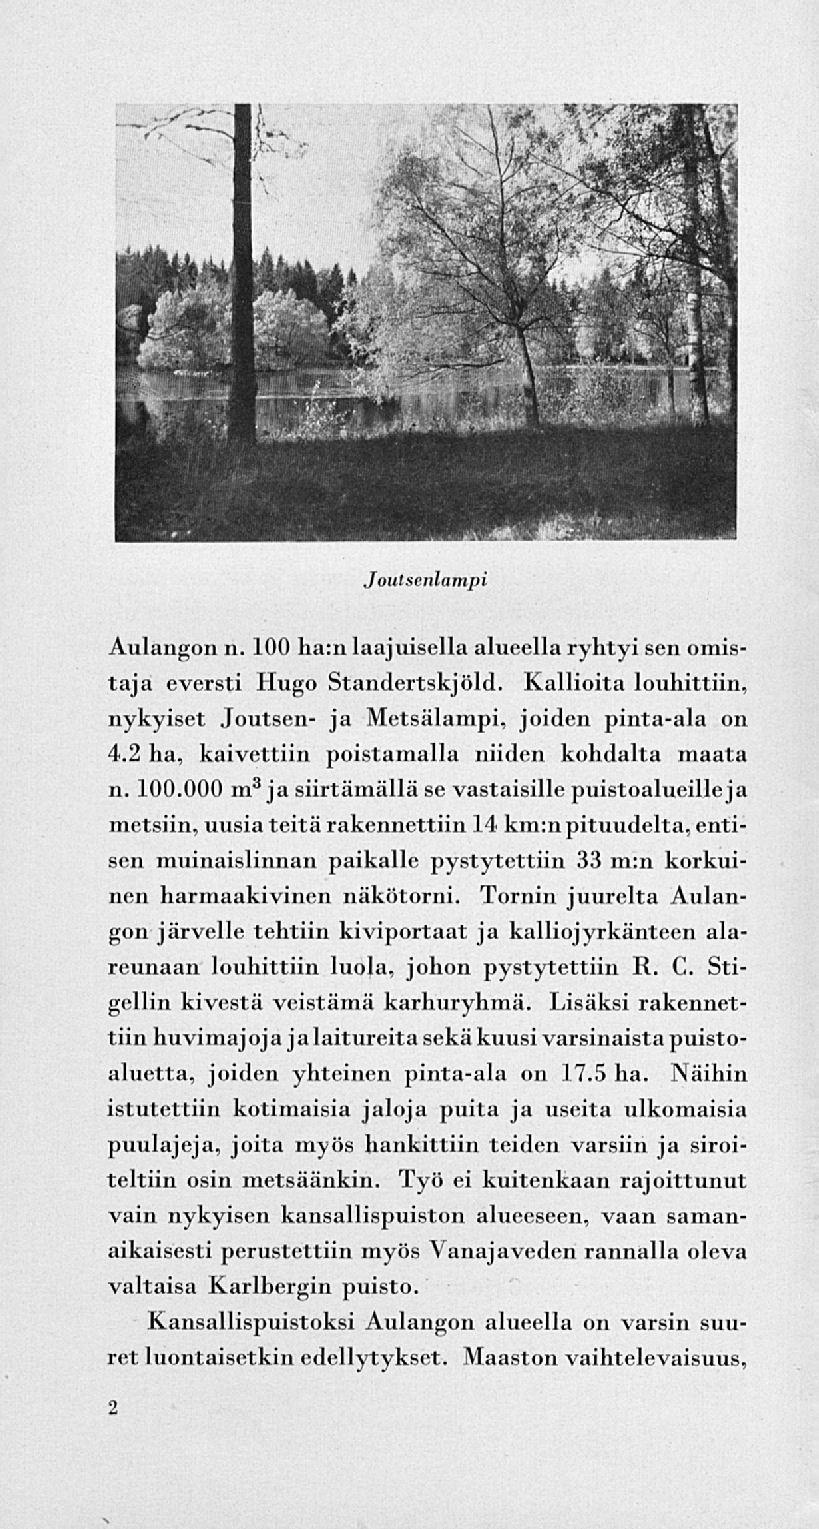 Joutsenlampi Aulangon n. 100 ha:n laajuisella alueella ryhtyi sen omistaja eversti Hugo Standertskjöld. Kallioita louhittiin, nykyiset Joutsen- ja Metsälampi, joiden pinta-ala on 4.